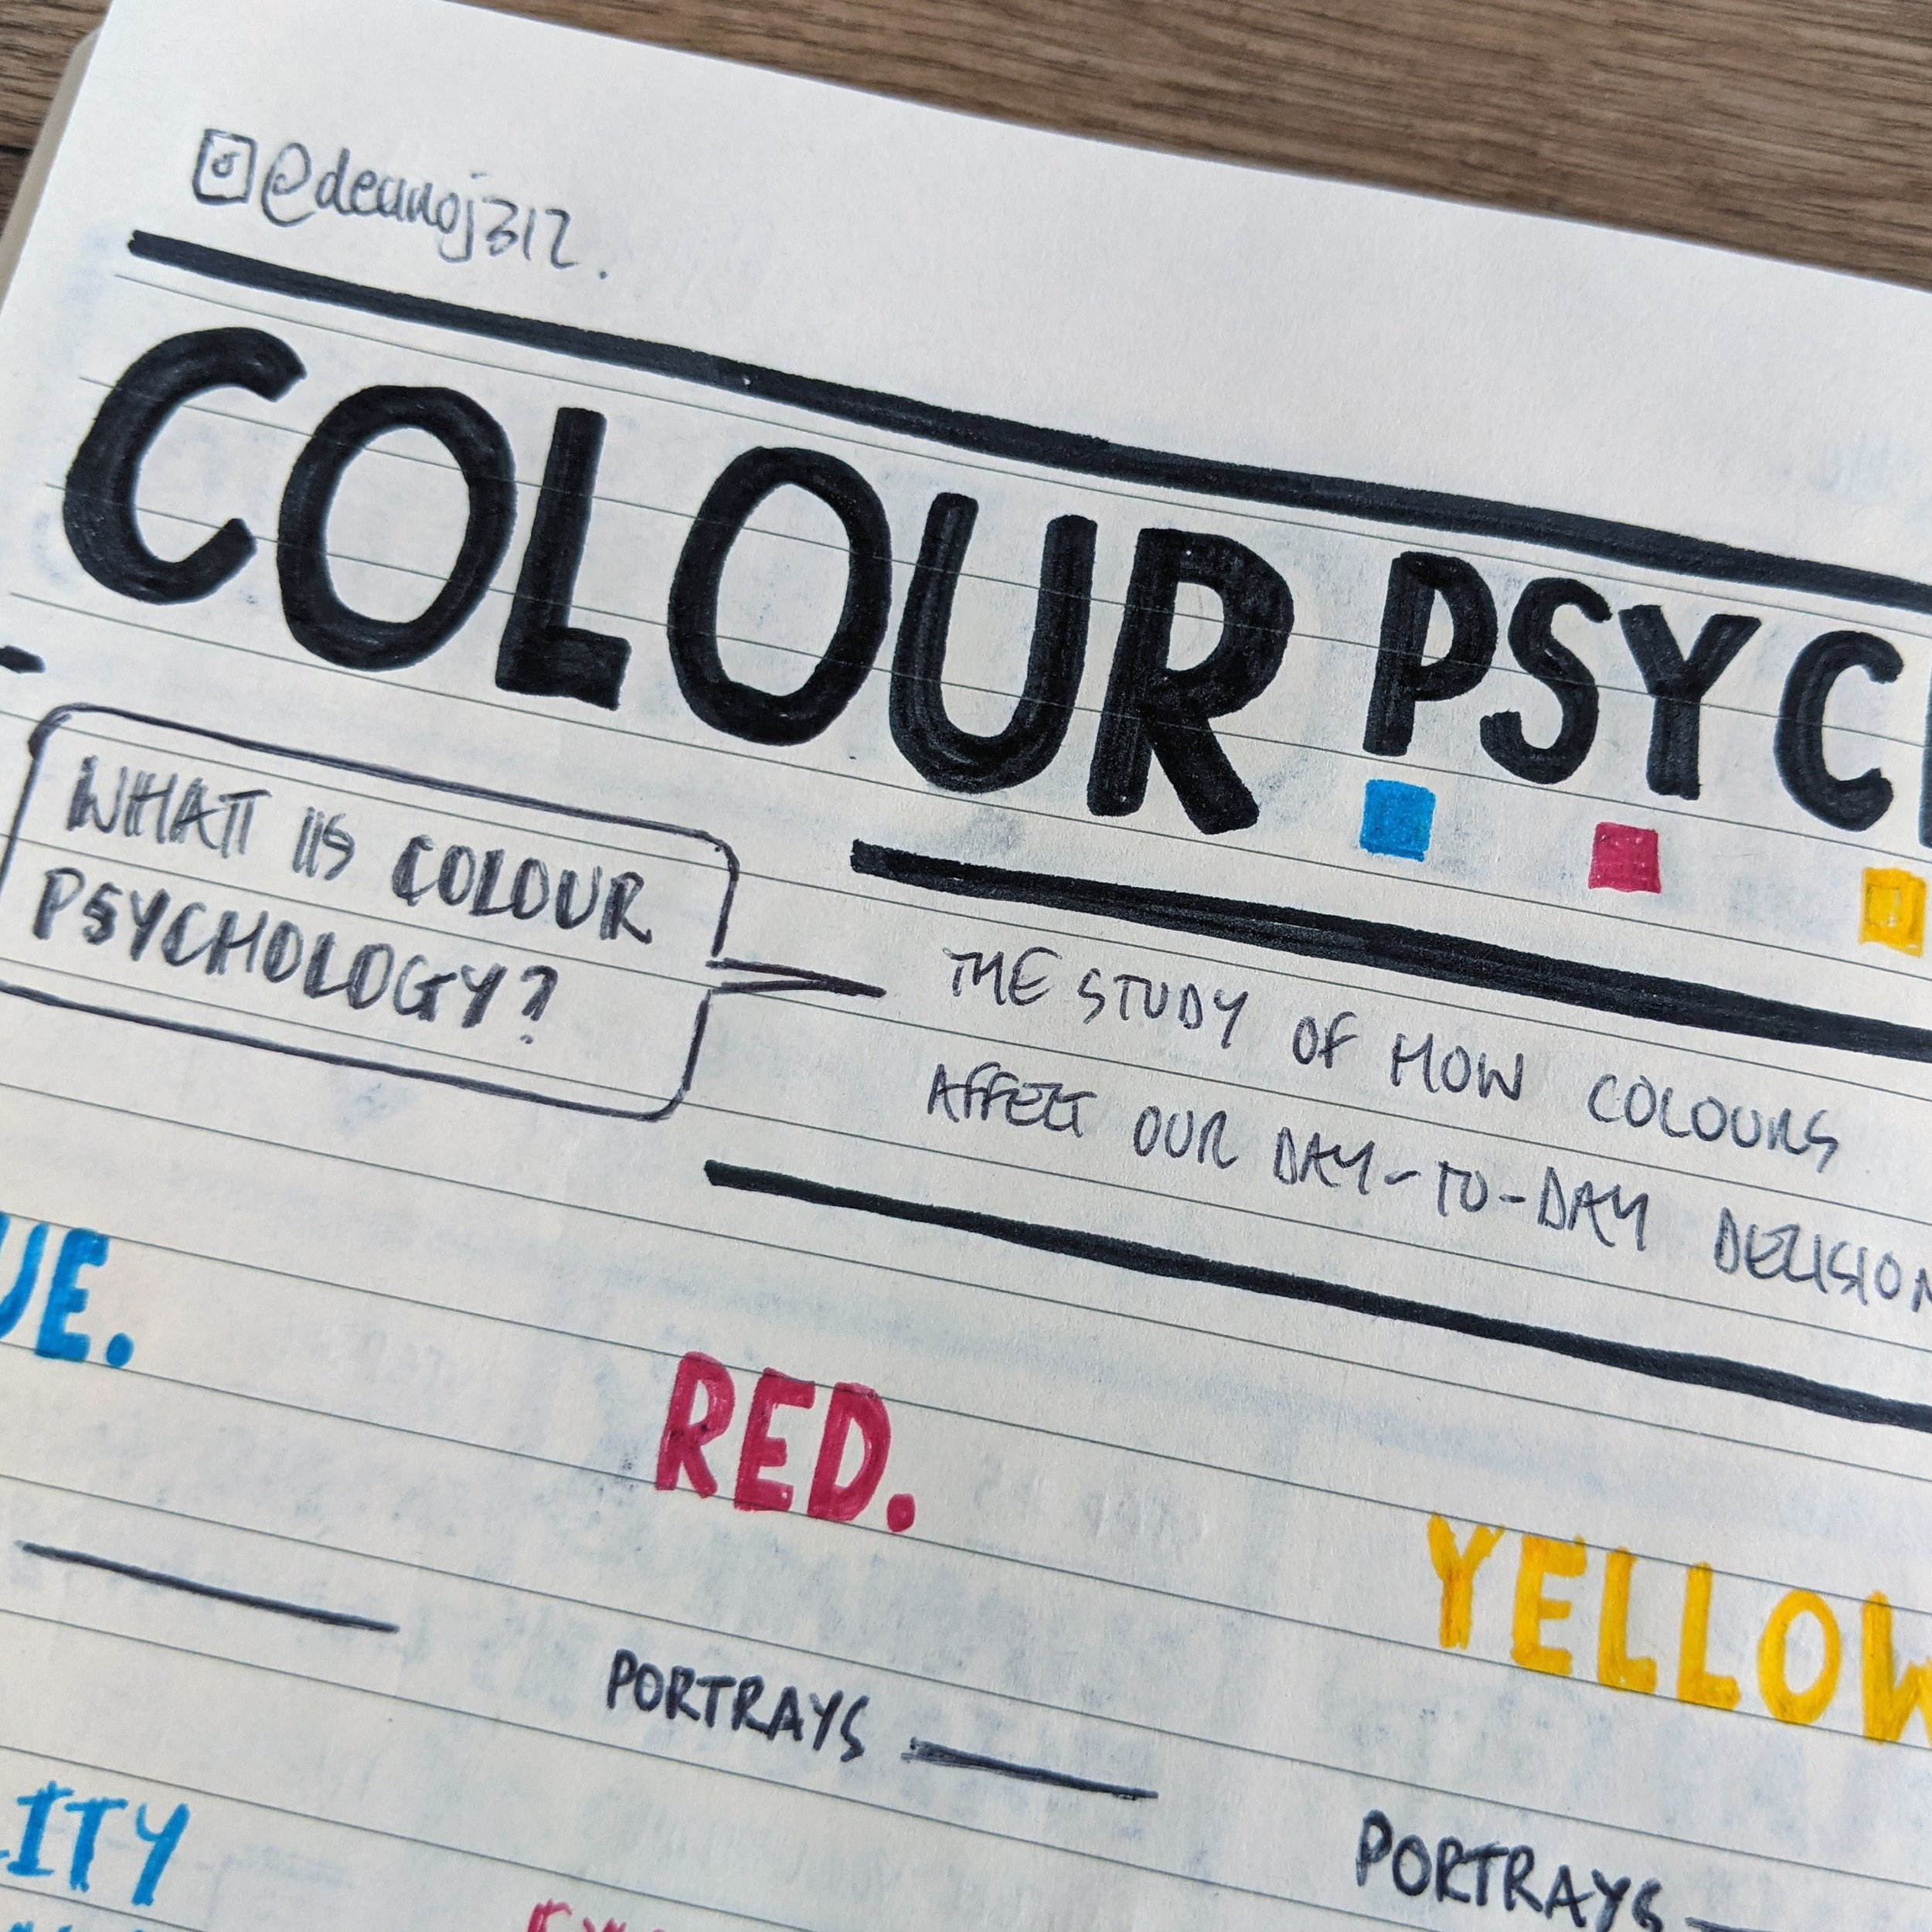 ColourPsychologyInDesign2.jpg